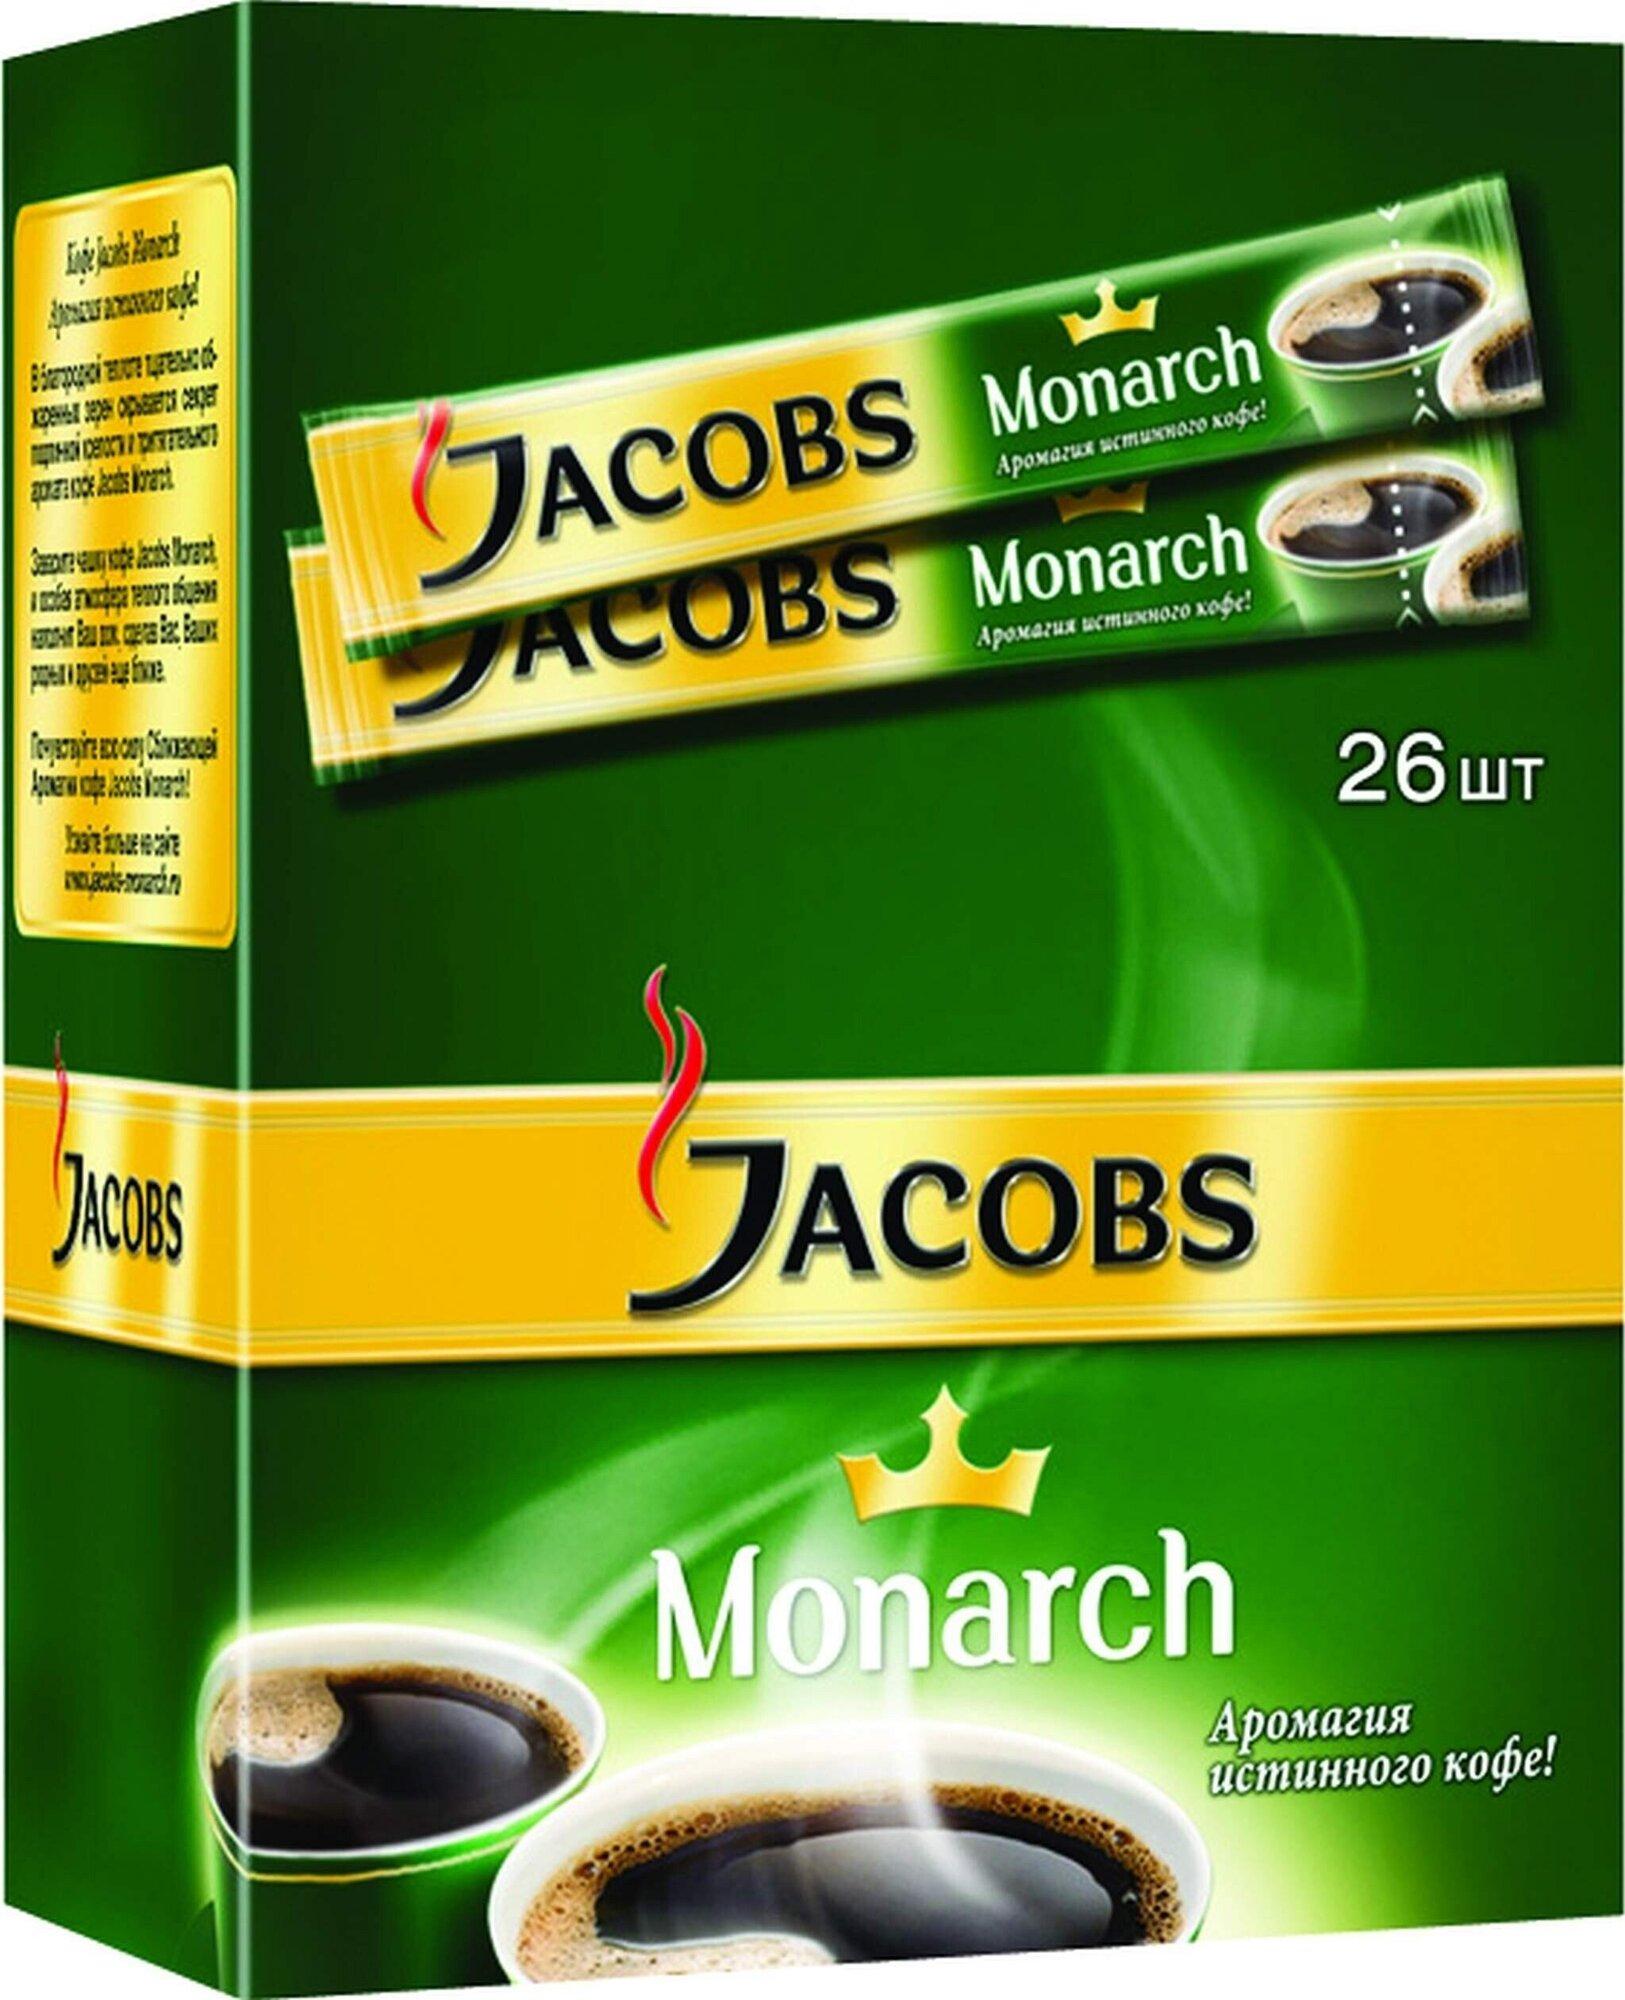 Растворимый кофе Jacobs Monarch, 26 cтиков - 1 уп